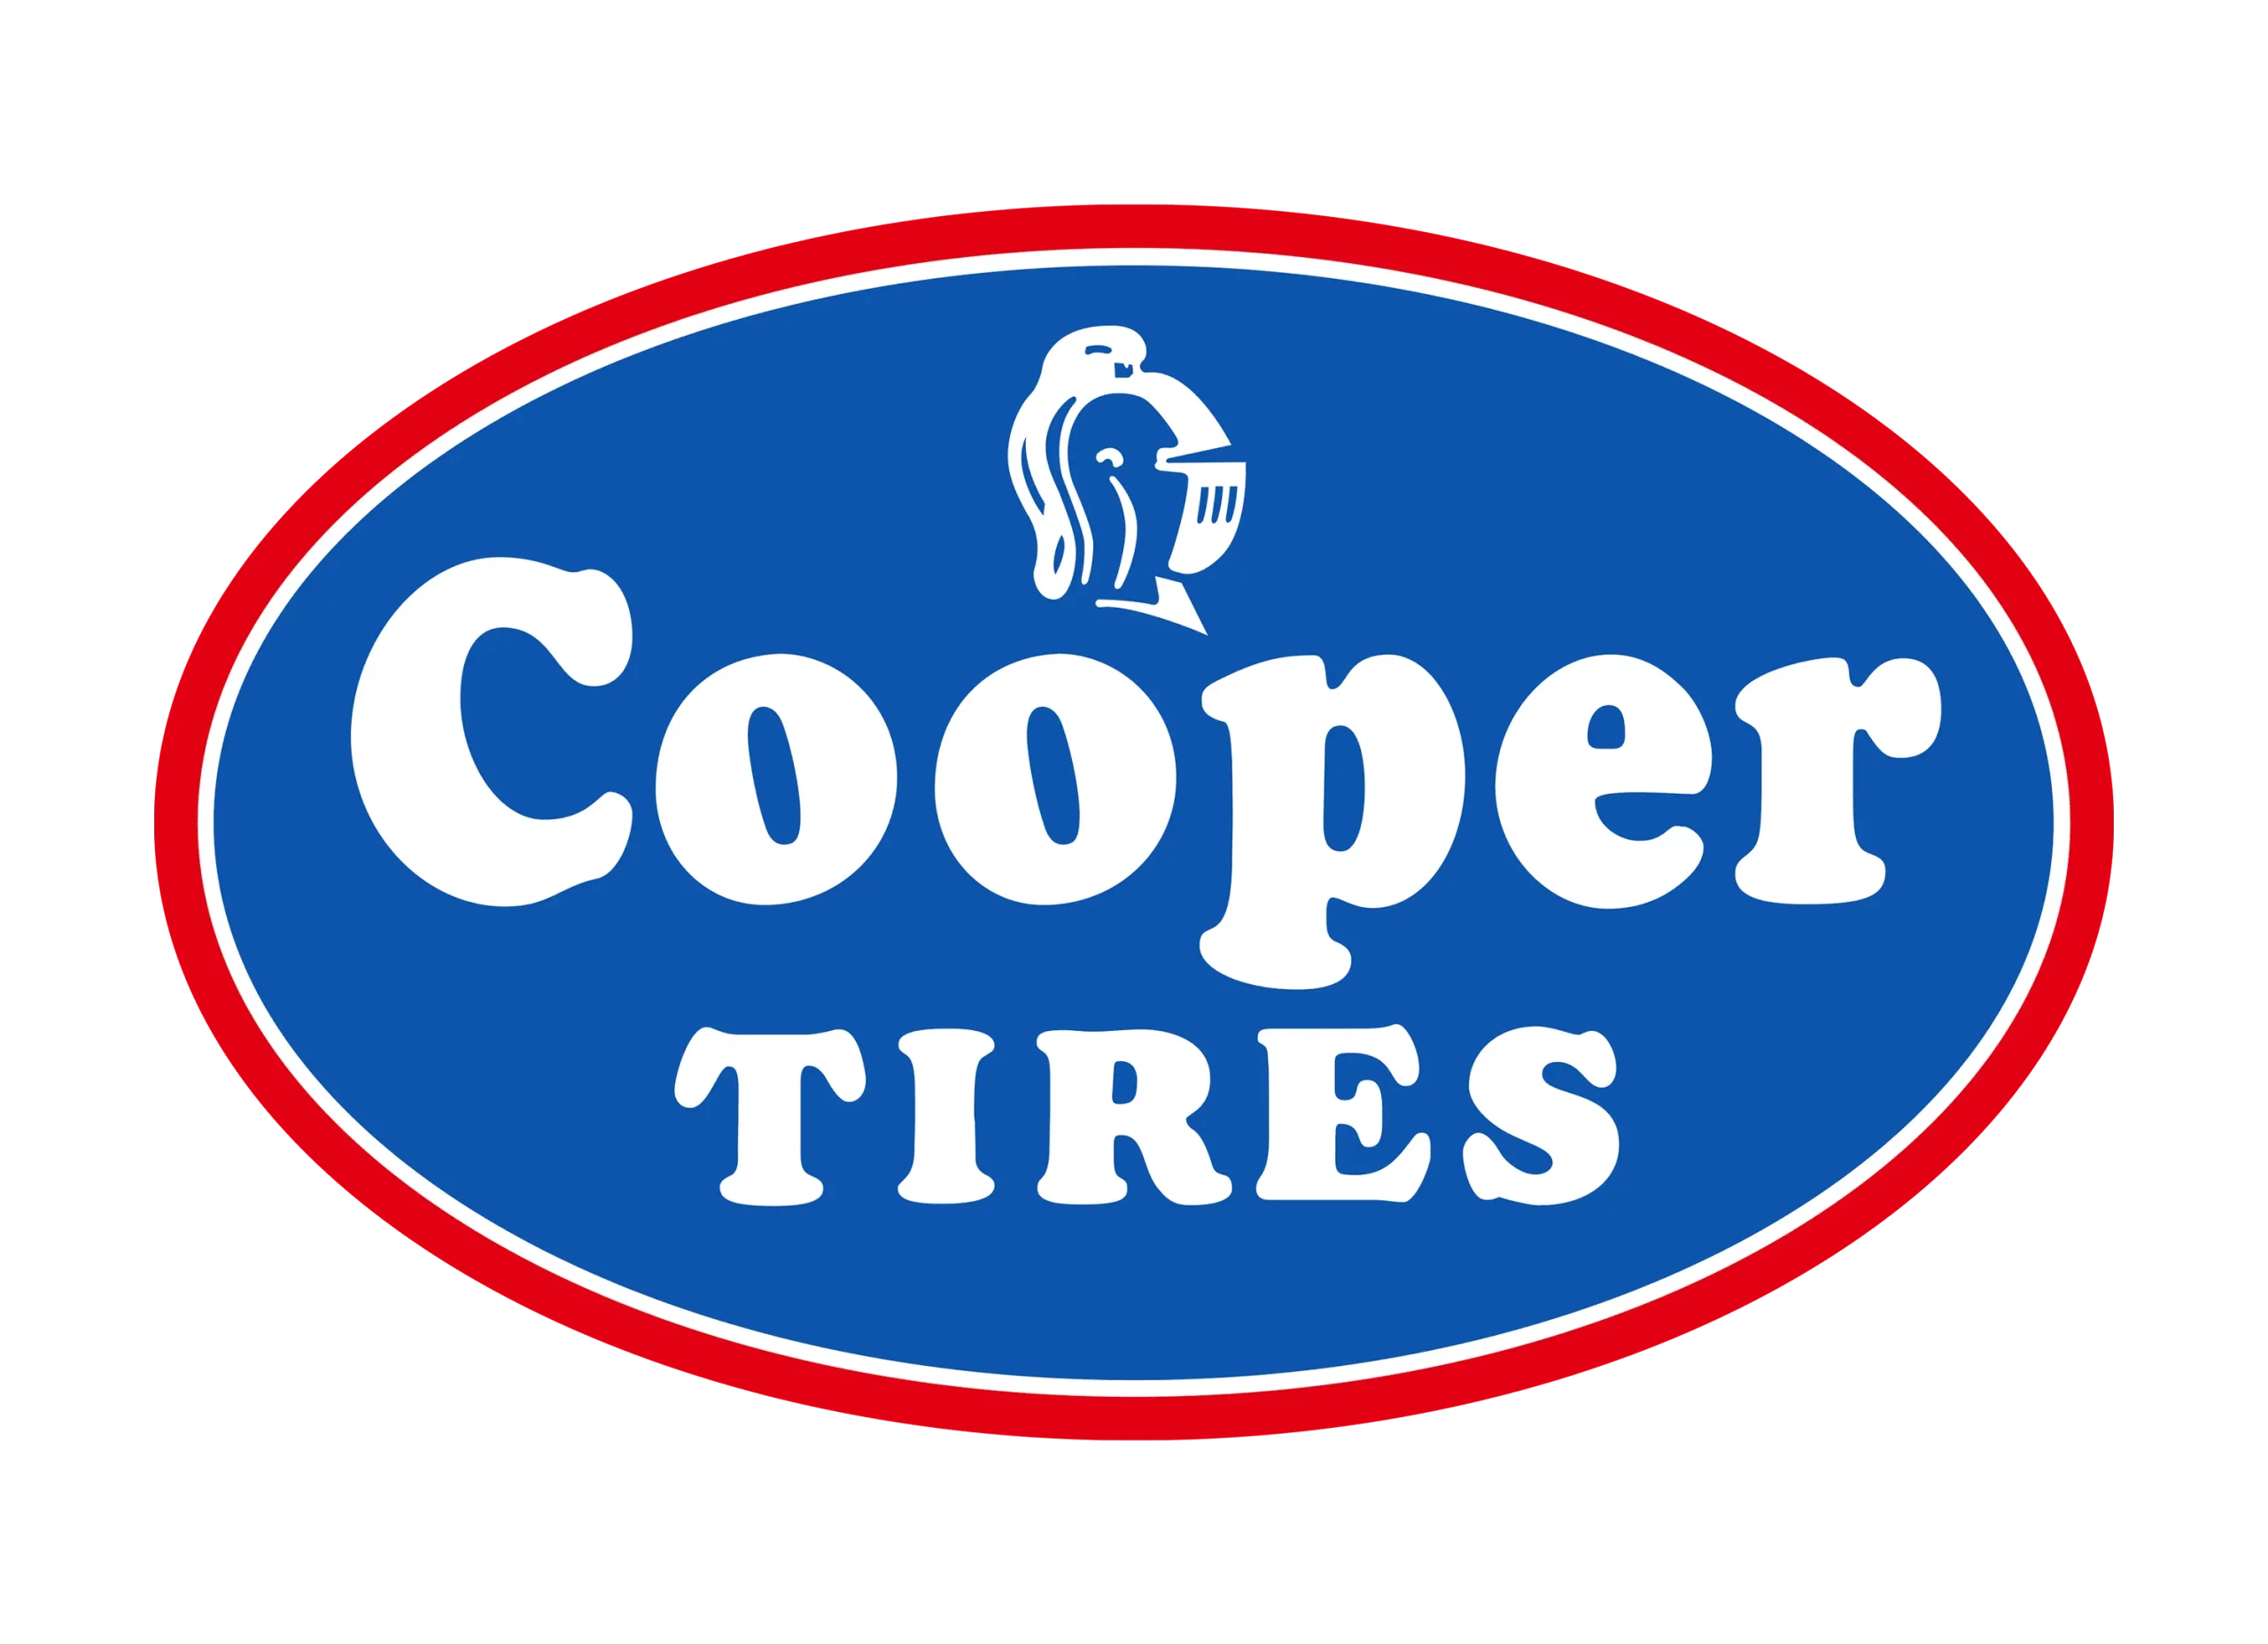 Cooper logo old